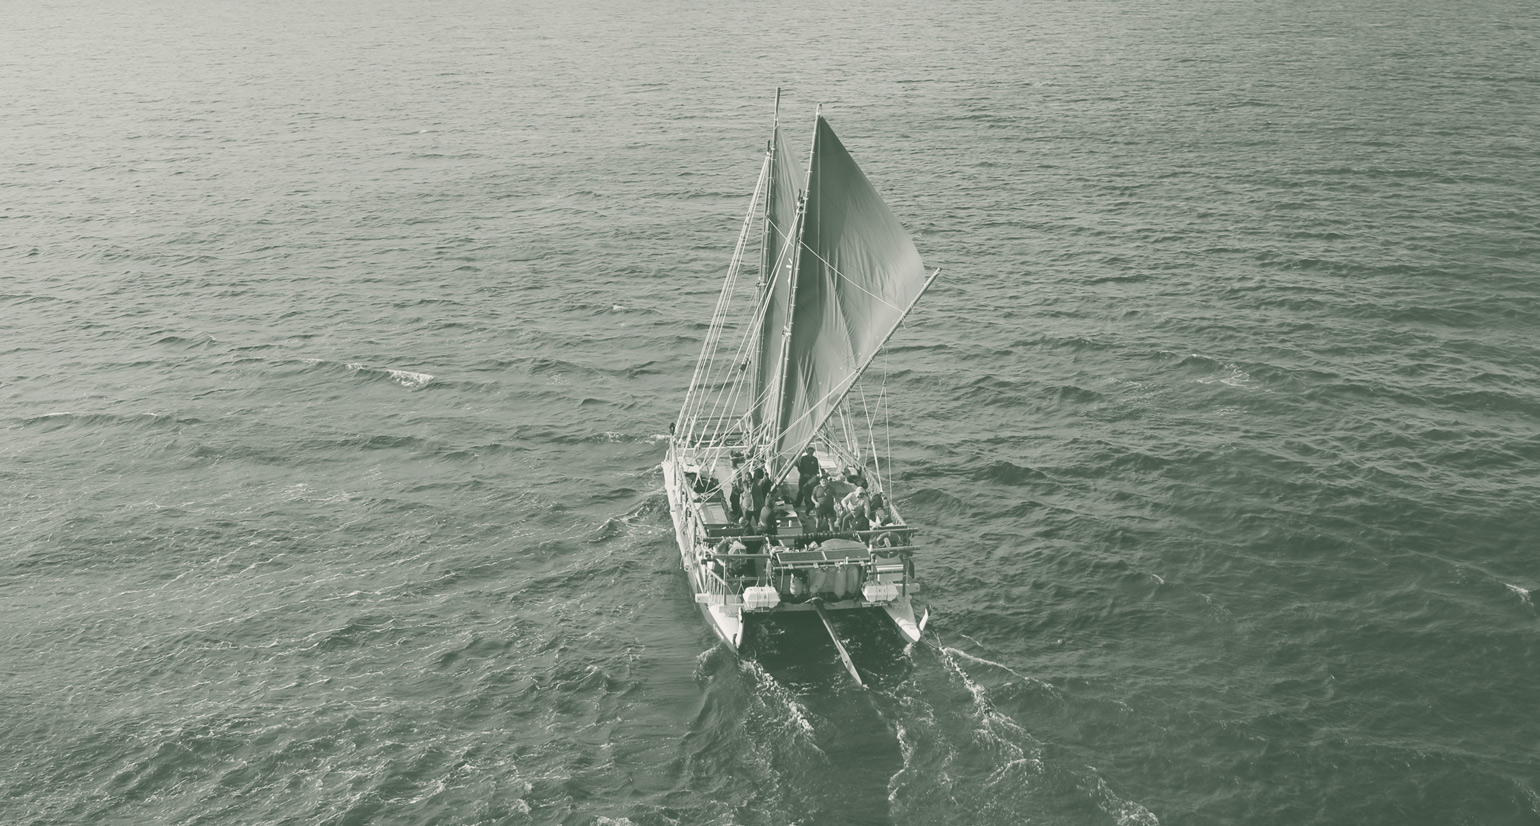 Waka hourua sailing in the sea.